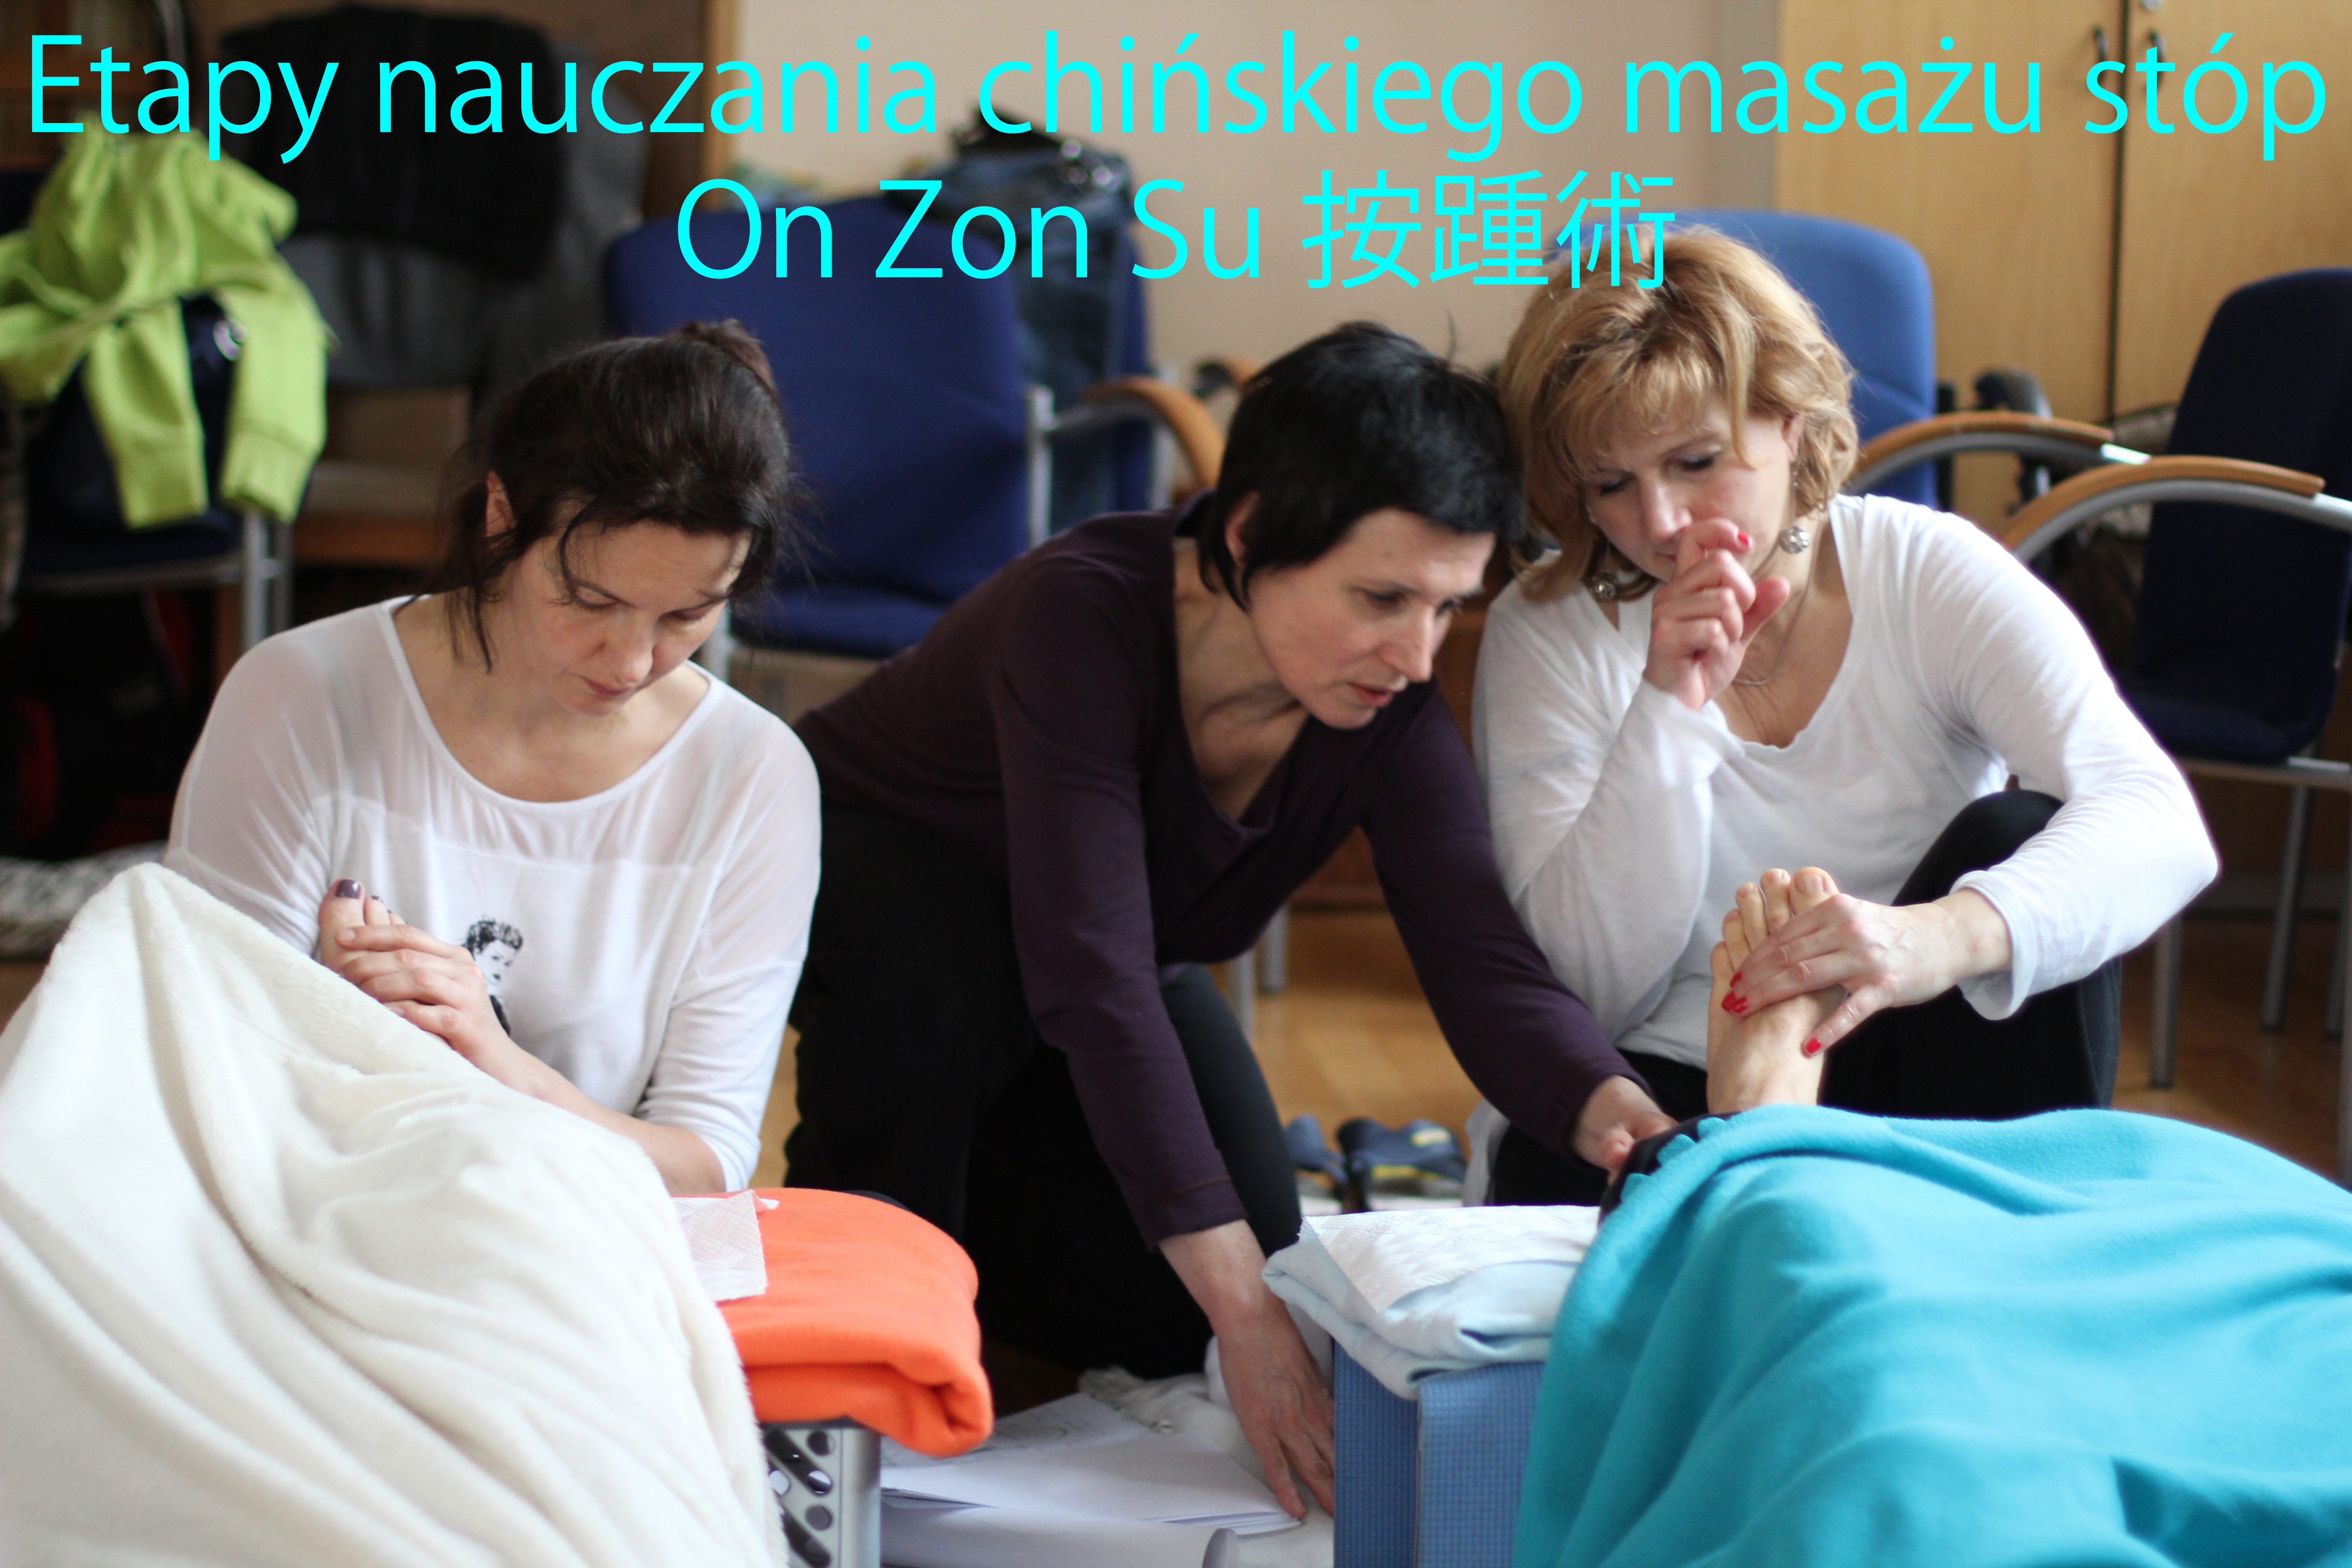 Kurs masażu stóp On Zon Su, Szkolenia refleksologii stóp - Etapy nauczania chińskiego masażu stóp On Zon Su 按踵術 IMG_7017_MEM.jpg